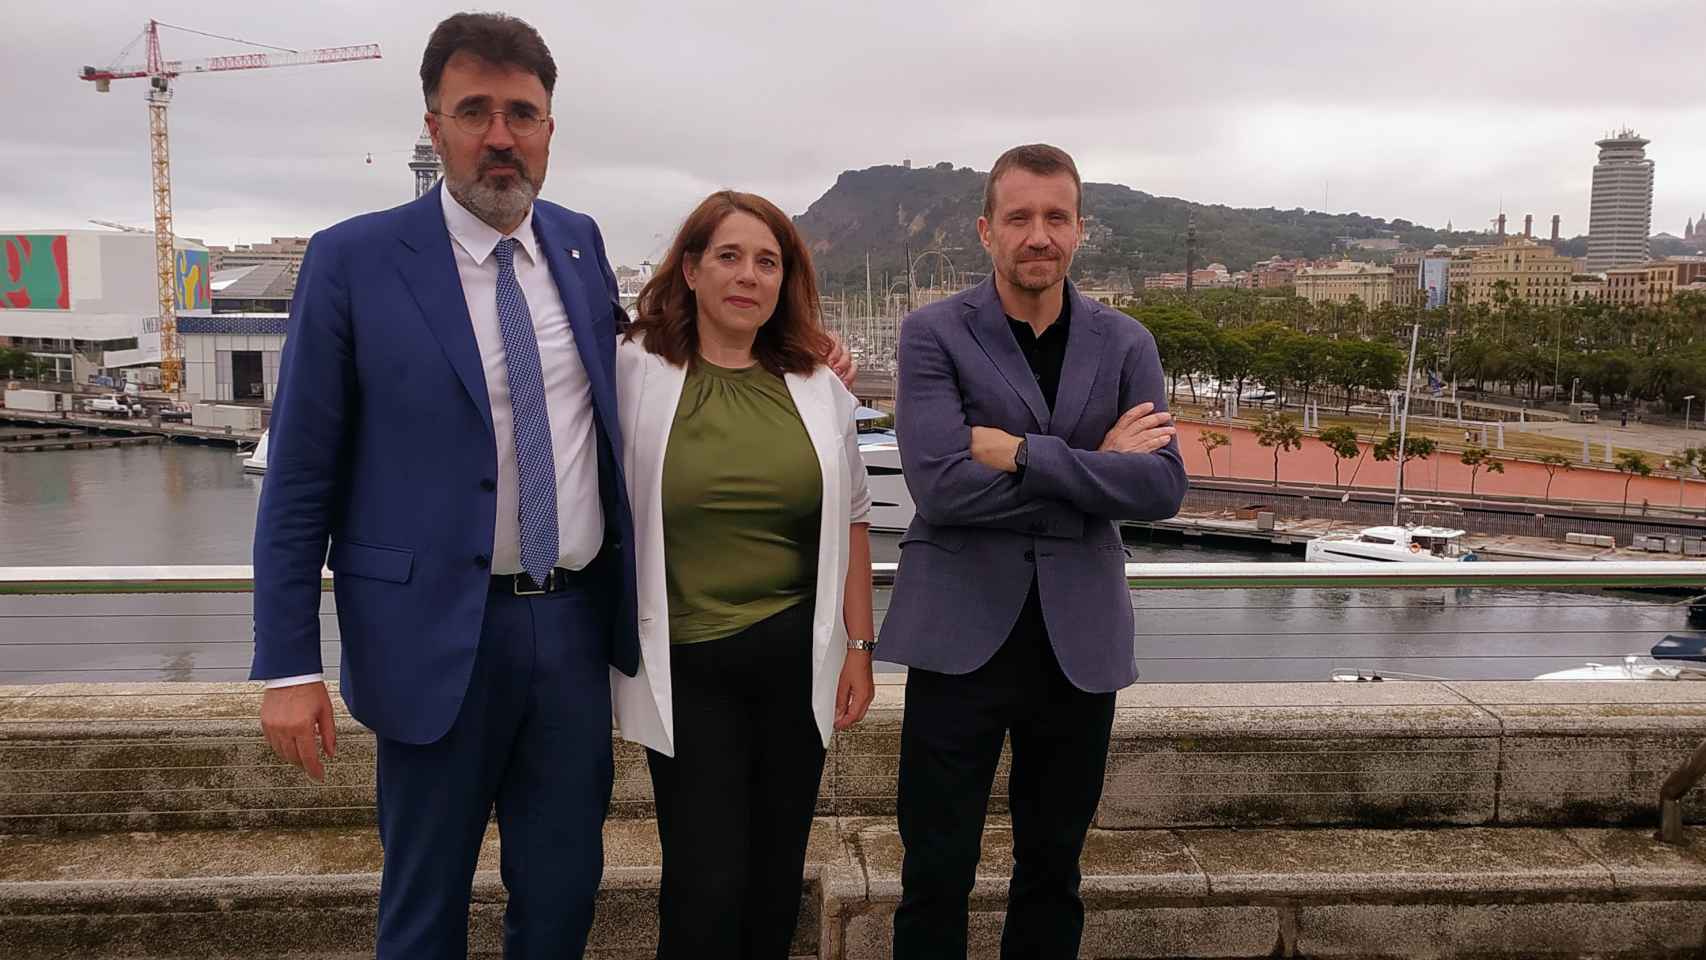 De izquierda a derecha: Lluís Salvadó, presidente del Puerto de Barcelona; Emma Cobos, directora de Innovación de la infraestructura portuaria; y Miquel Martí, CEO de Tech Barcelona.